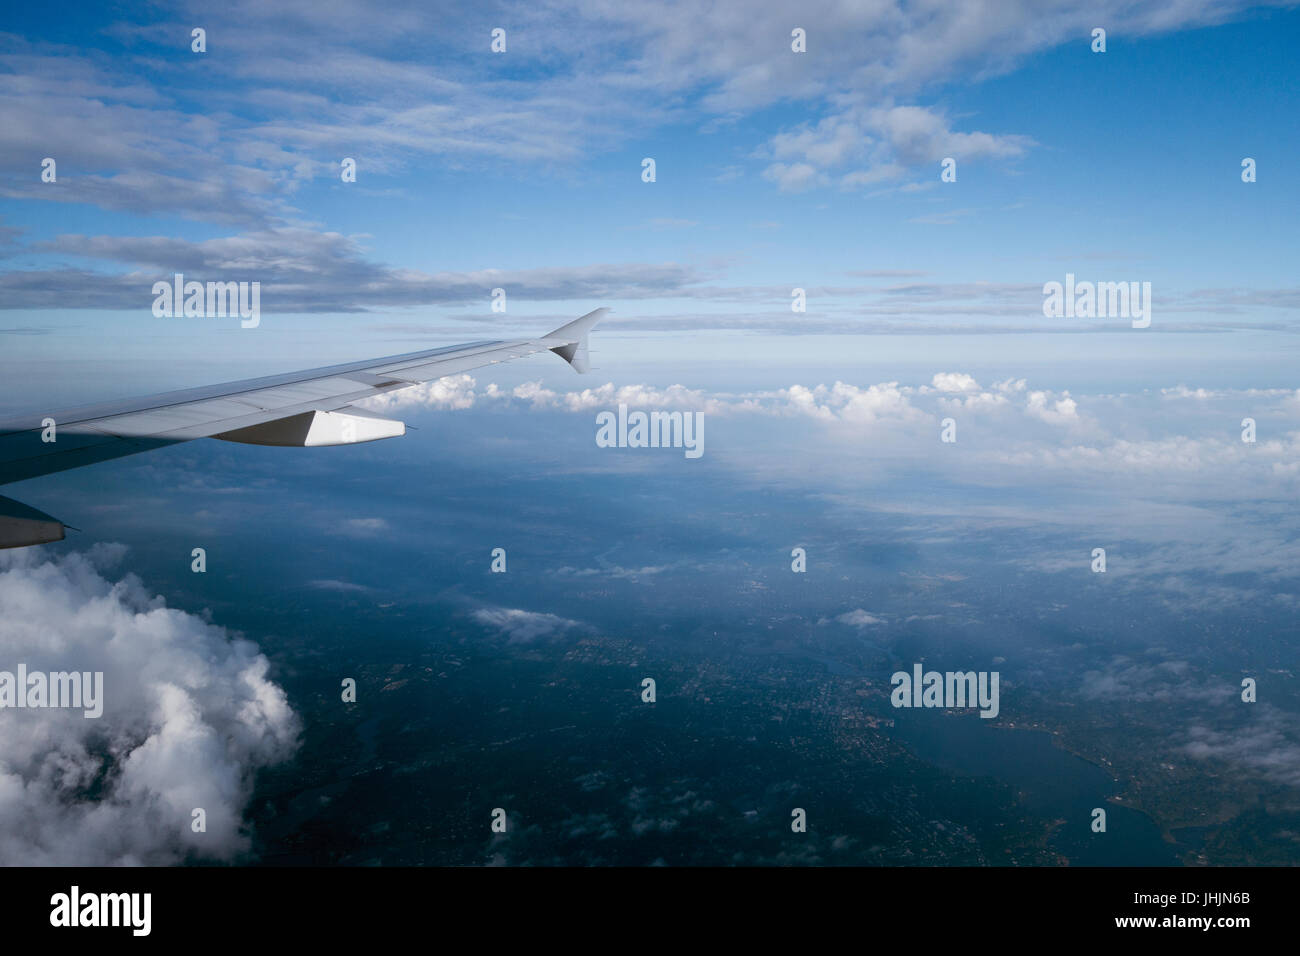 Por encima de las nubes volando alto en vista de la ventana del avión Foto de stock